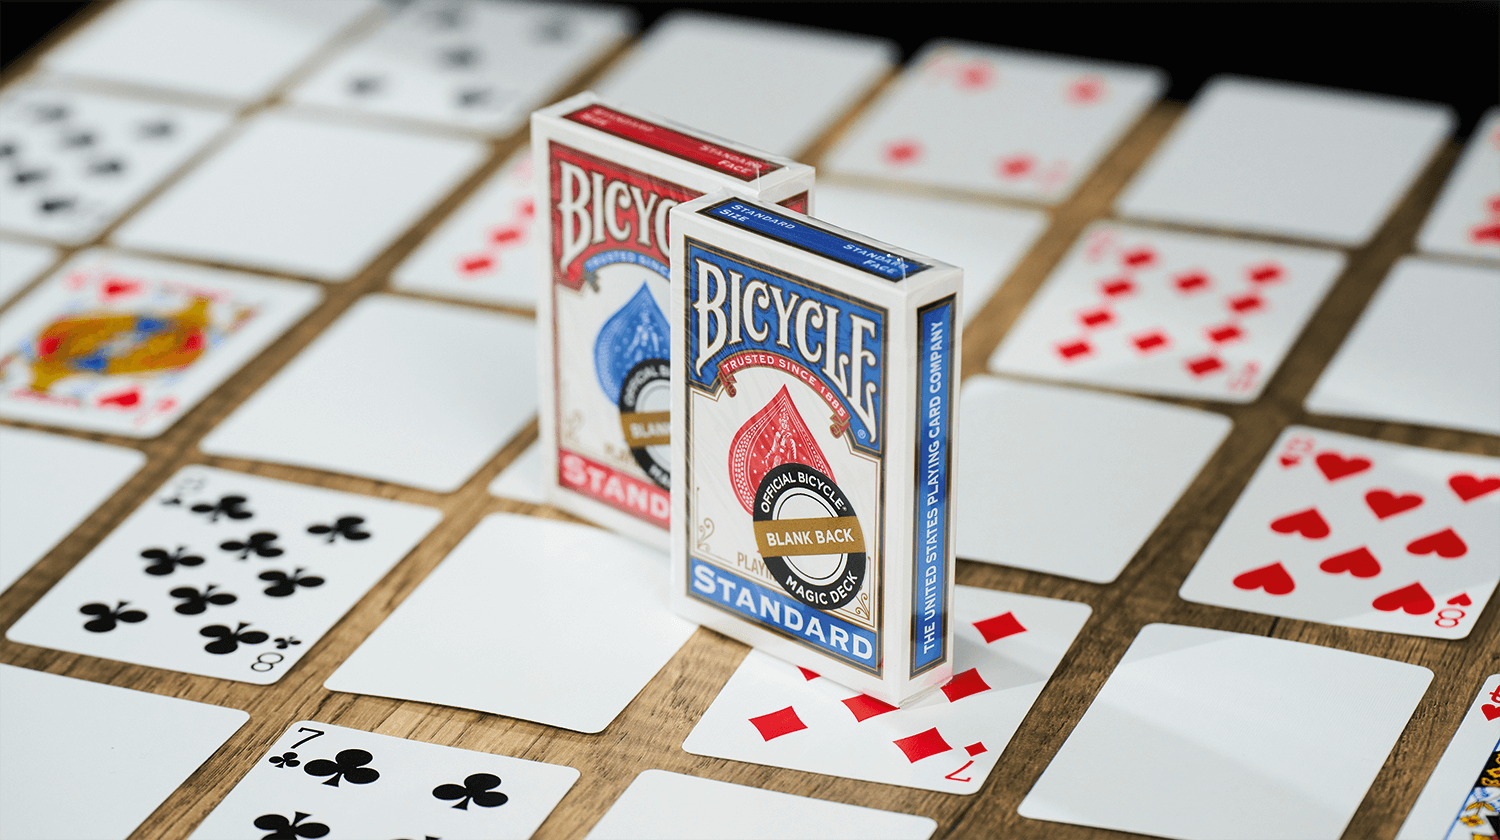 Die Bicycle Trick Deck Blank Back Kartenschachteln stehen auf einem Tisch, darunter ausgebreitet sind Karten aus diesem Deck. Sie haben eine klassische Vorderseite und eine leere Rückseite.